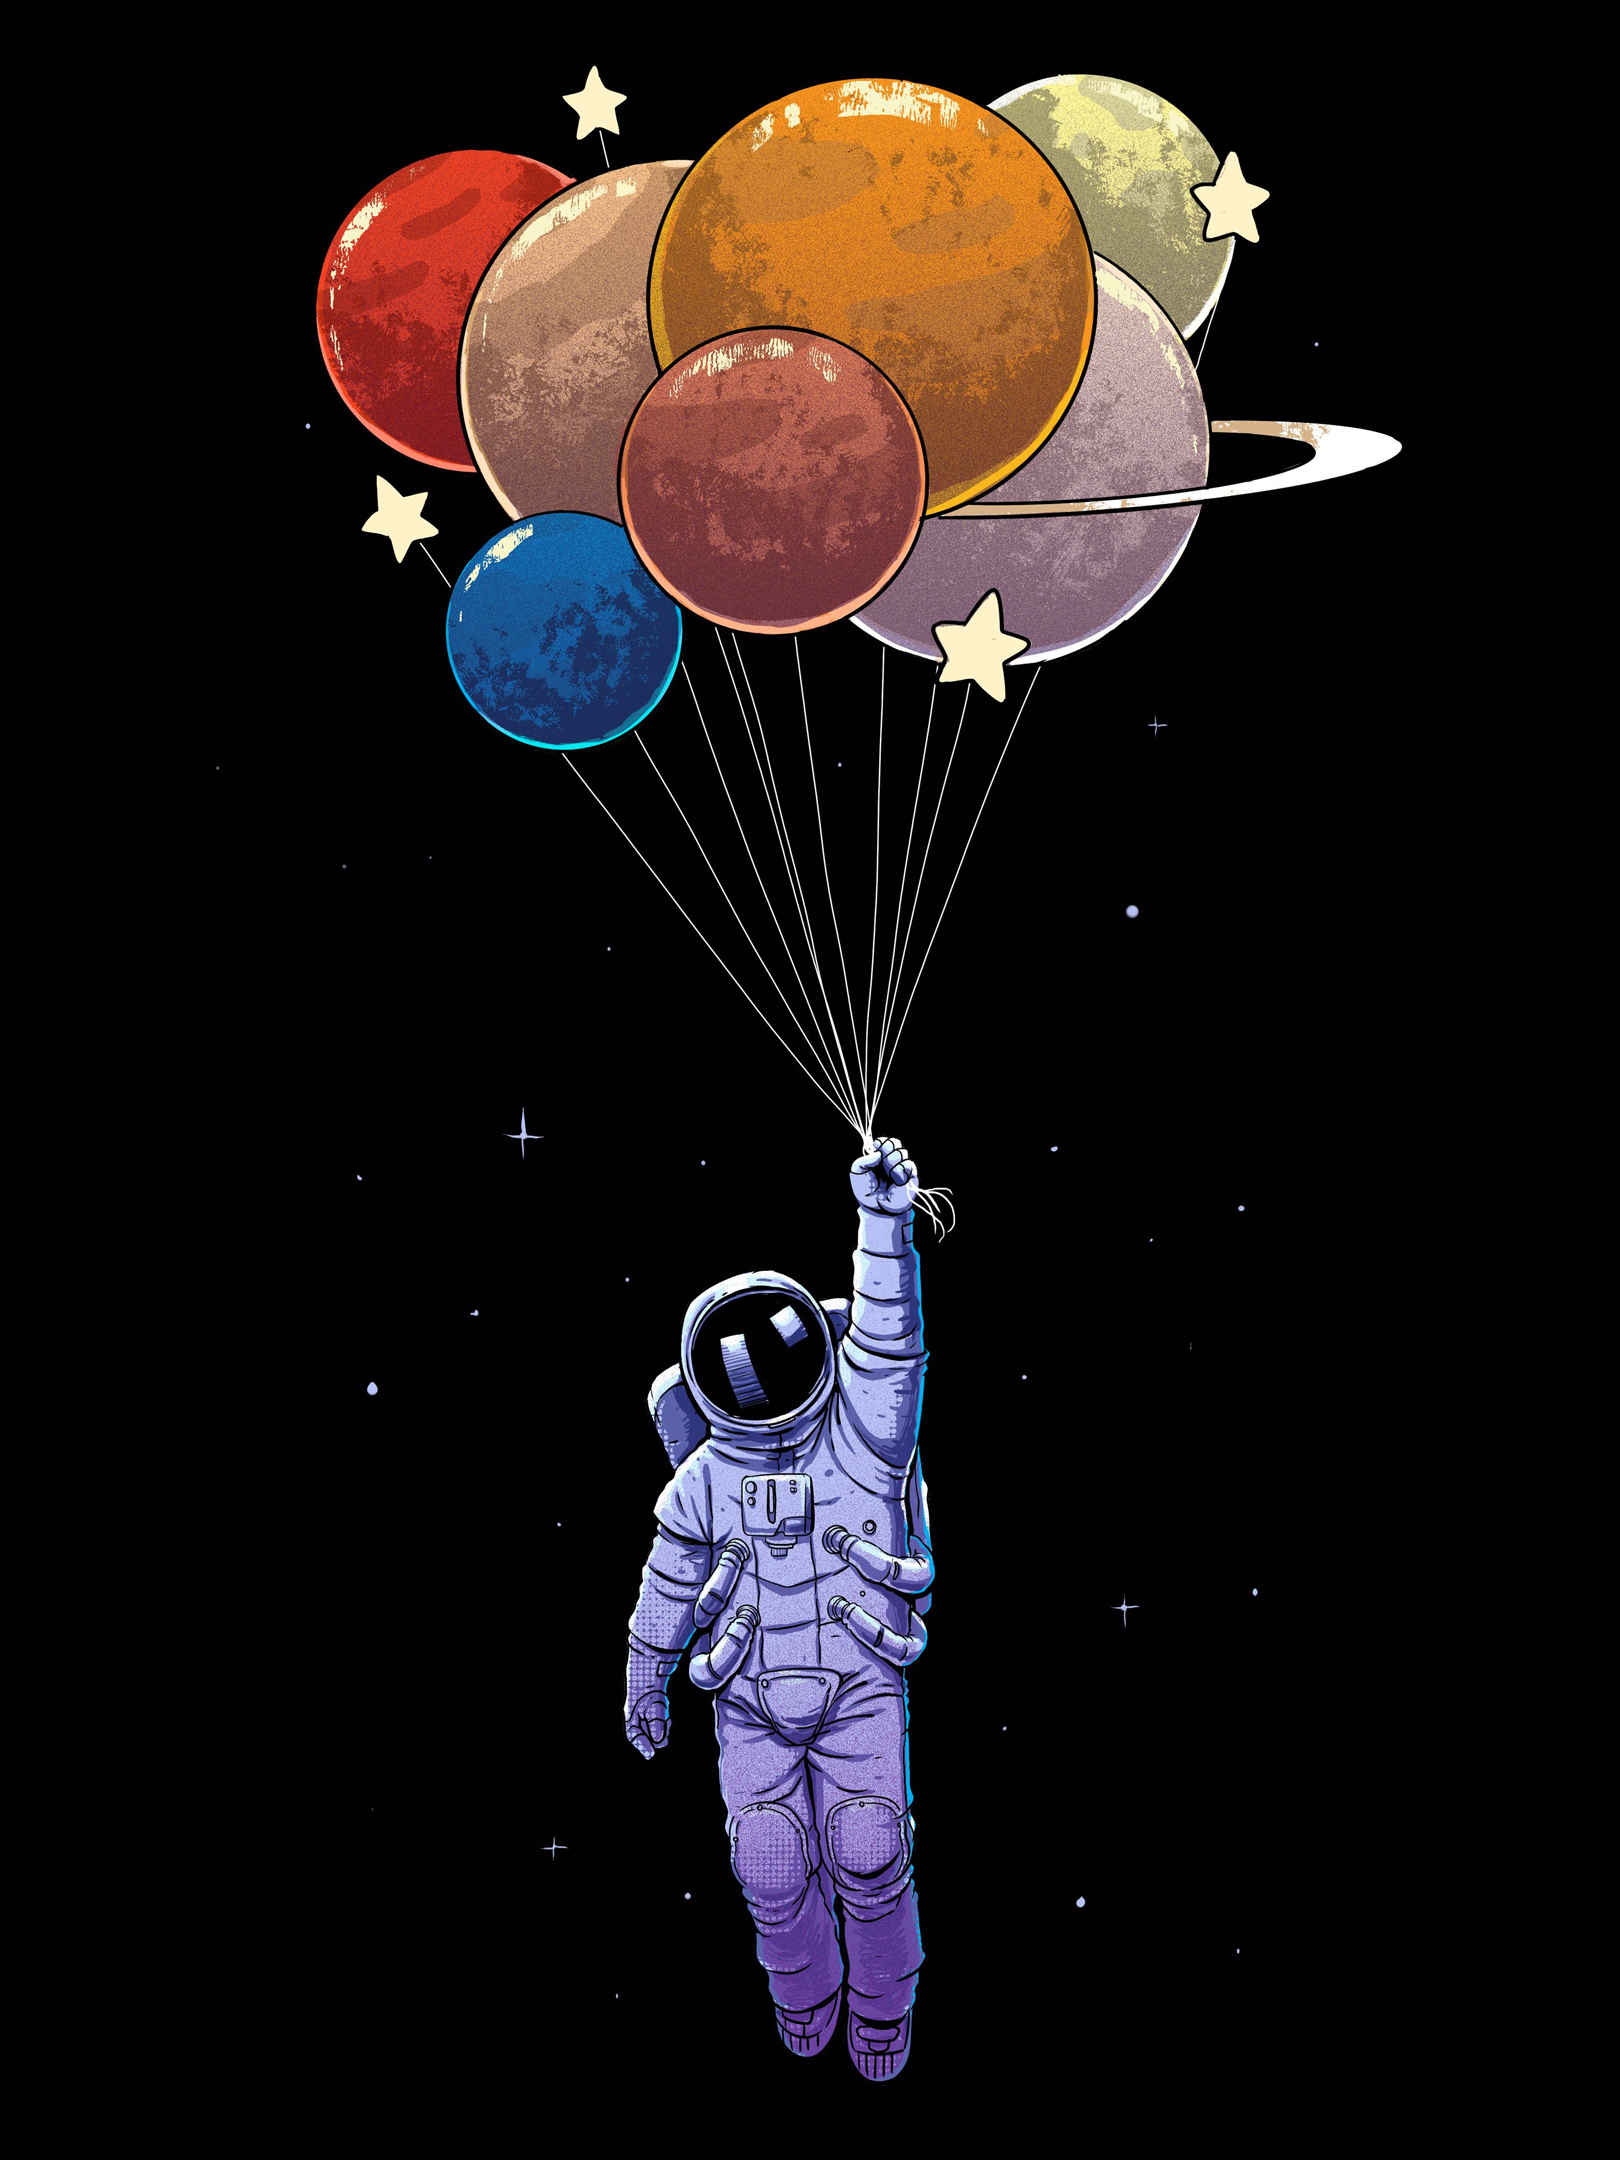 1429938 免費下載壁紙 科幻, 宇航员, 宇航服, 气球 屏保和圖片